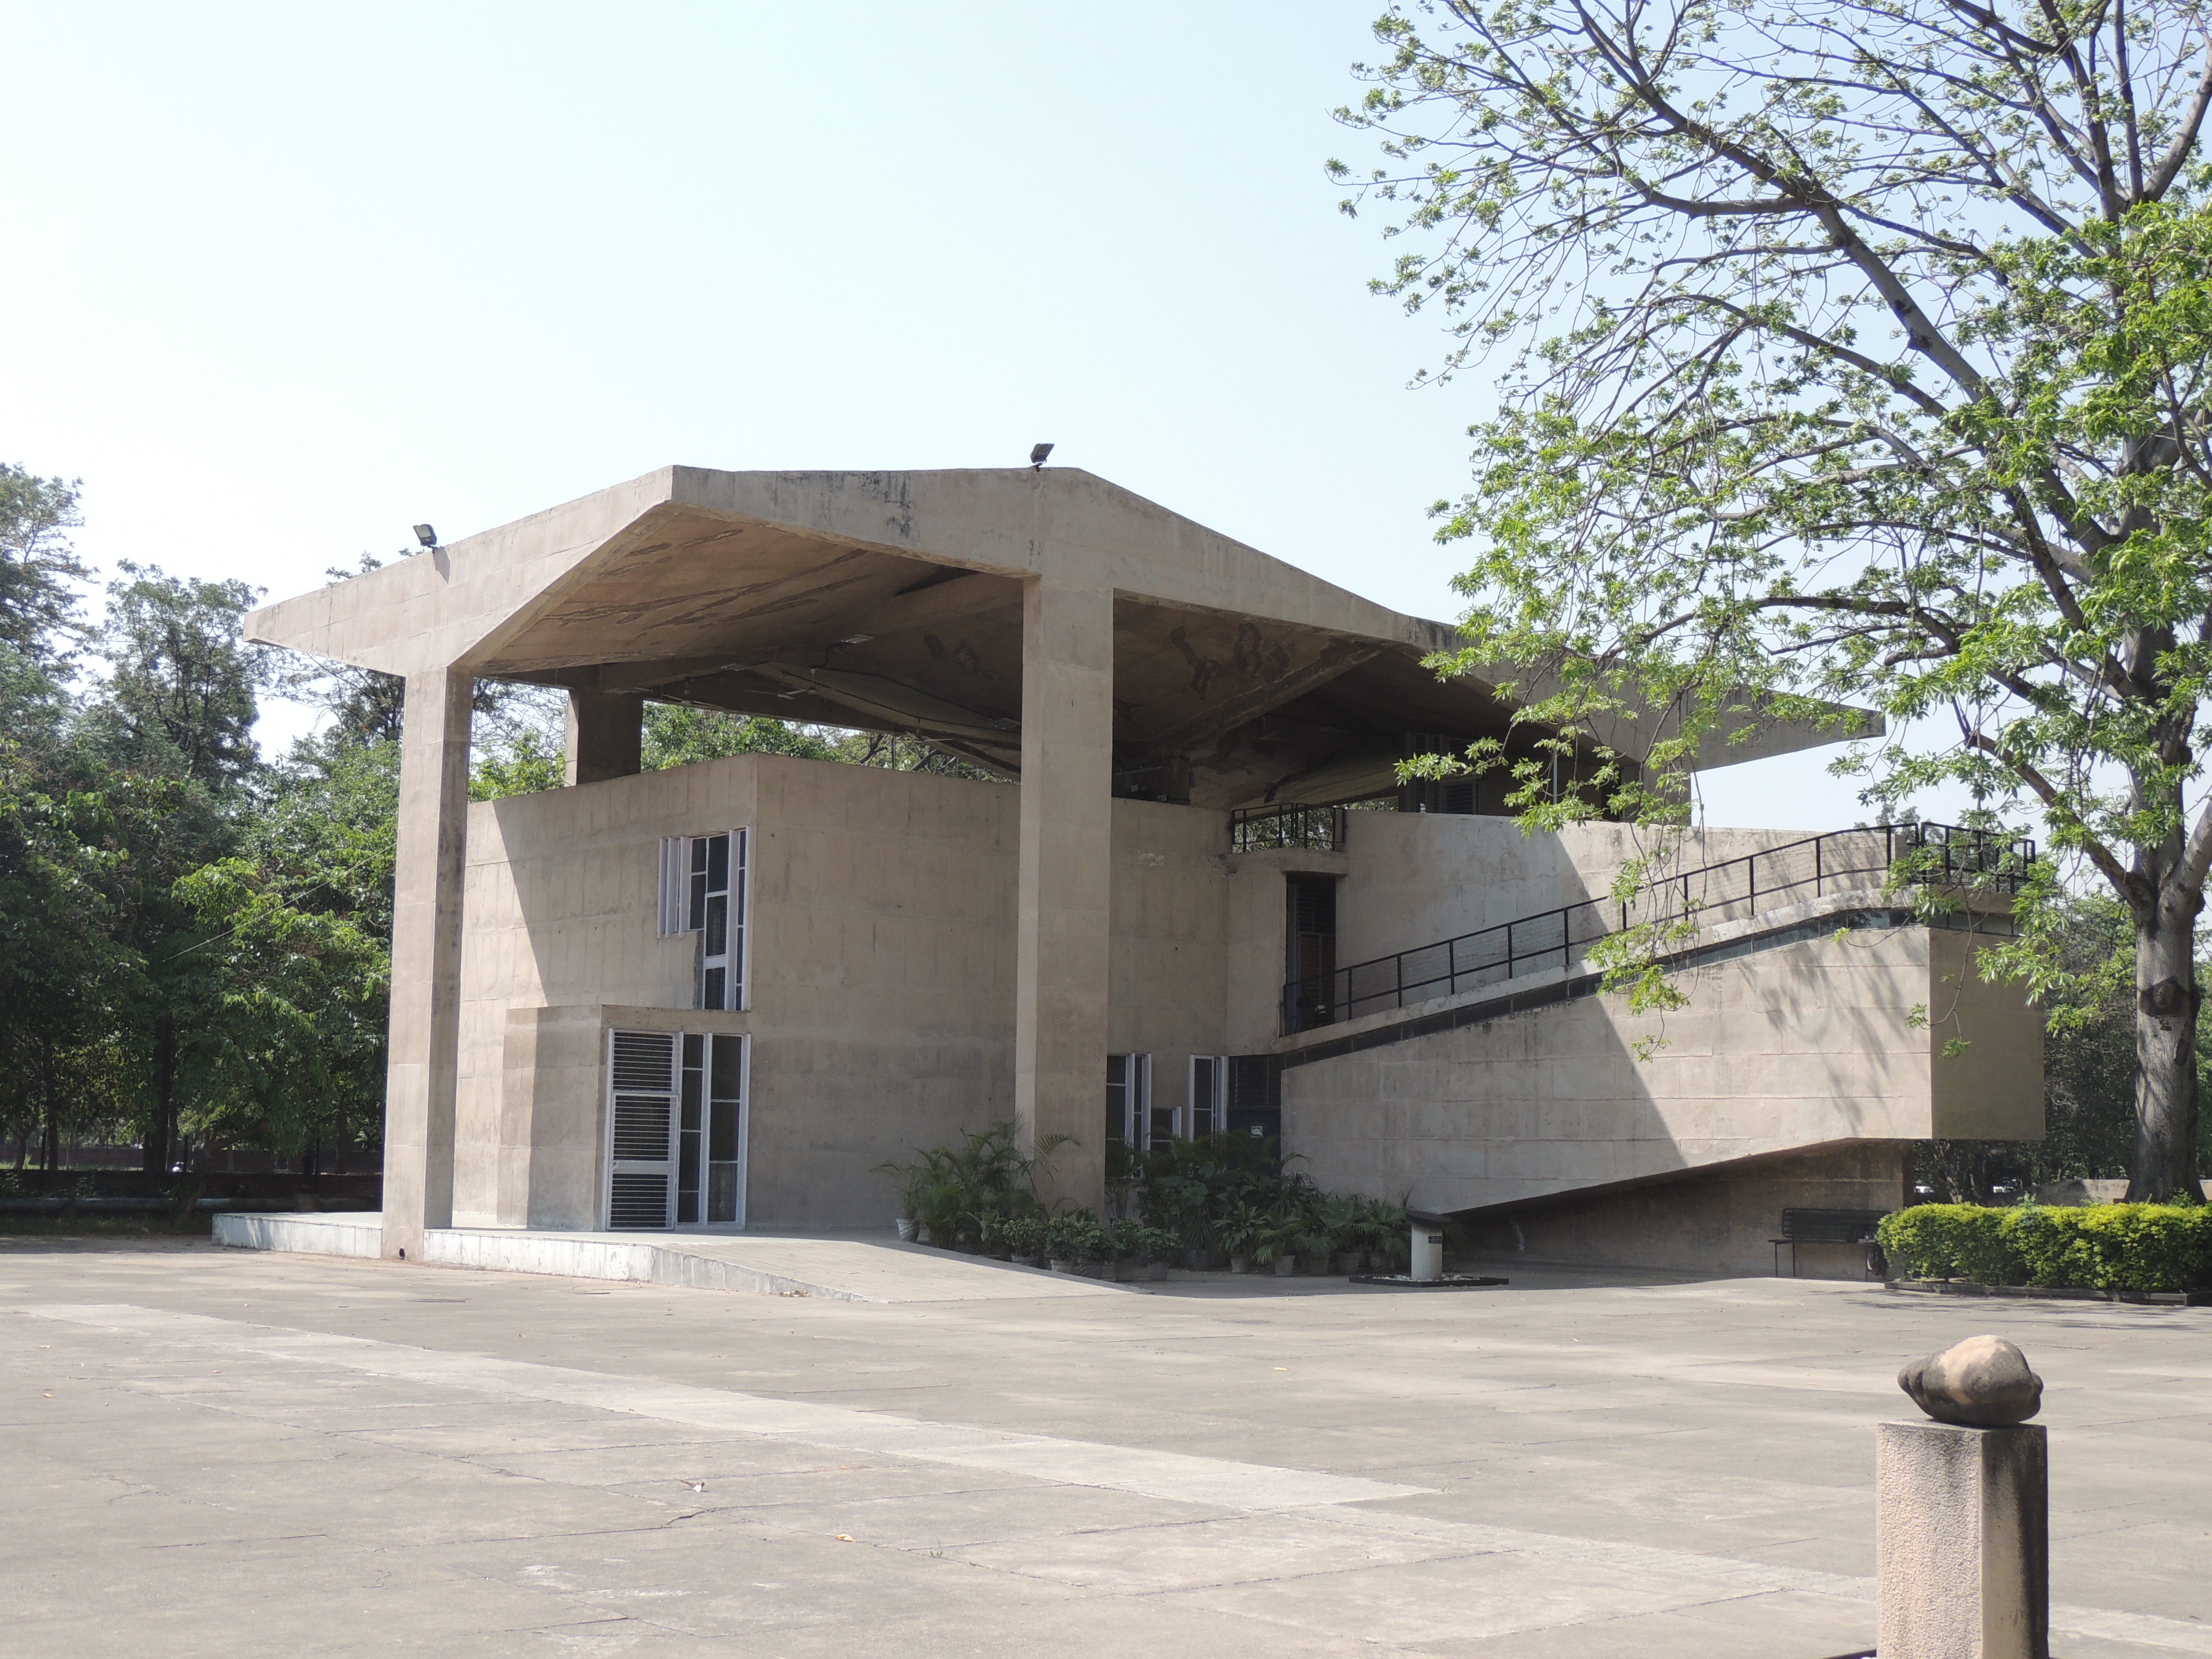 Chandigarh Architecture Museum. The Chandigarh Architecture Museum is